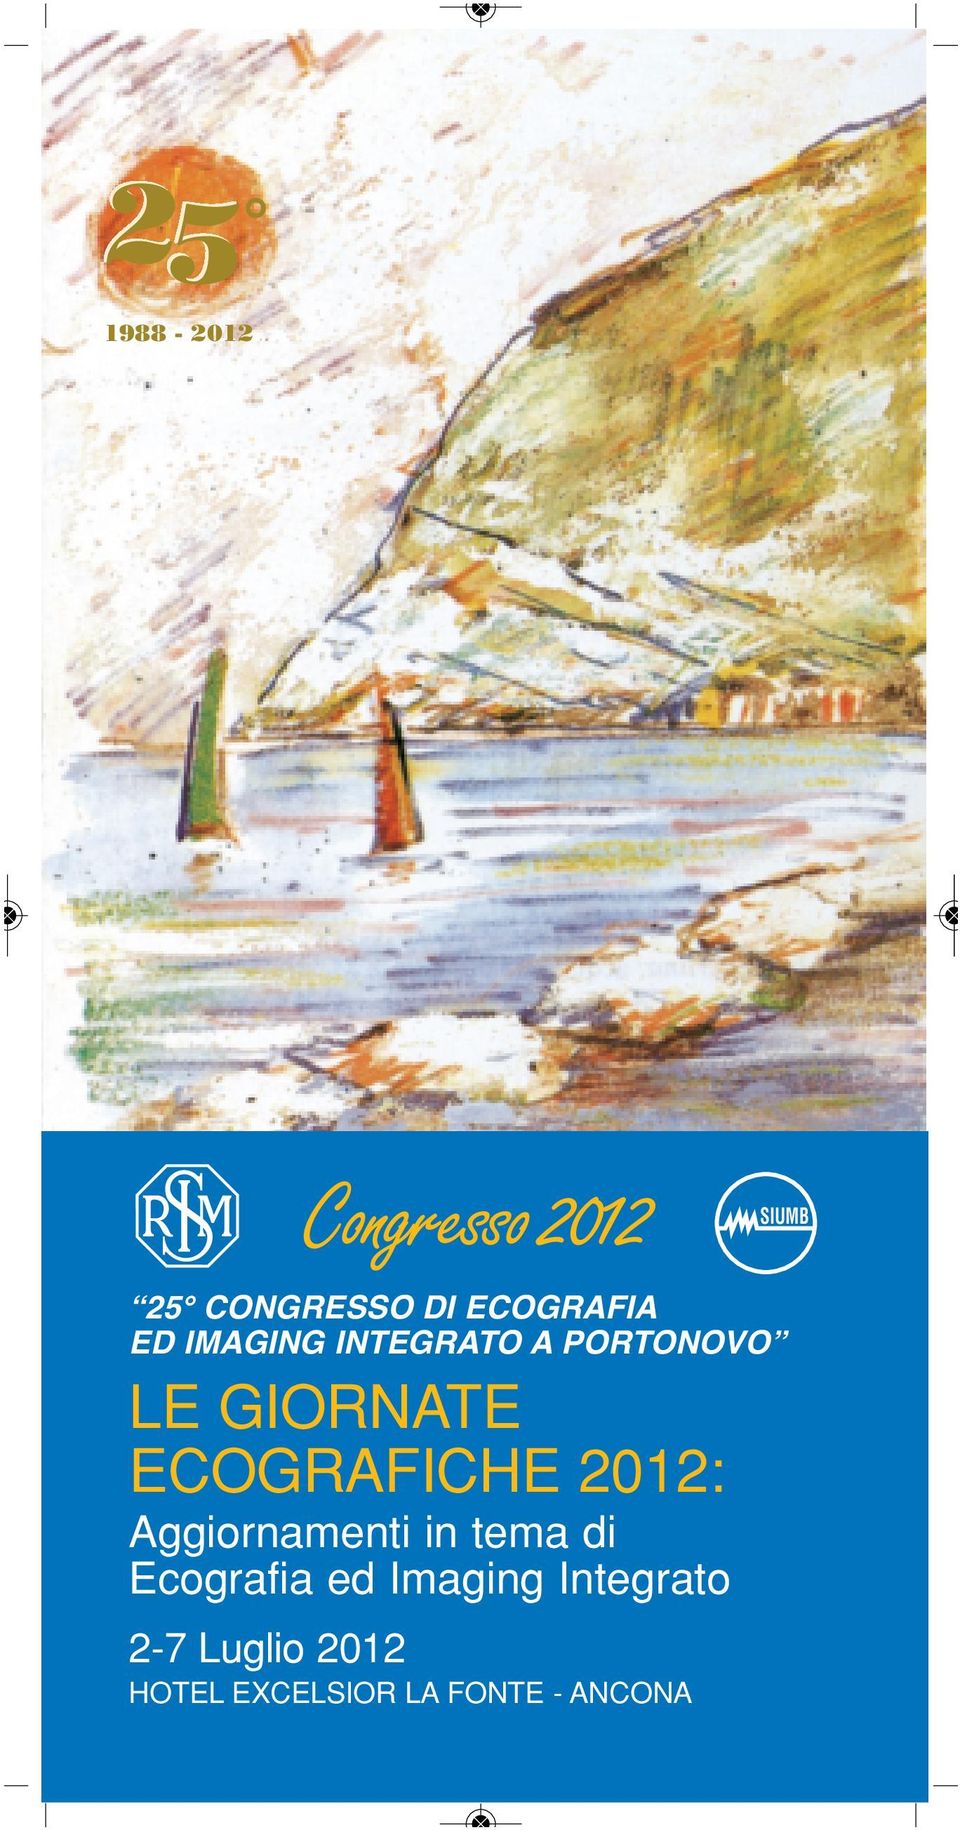 2012: Aggiornamenti in tema di Ecografia ed Imaging